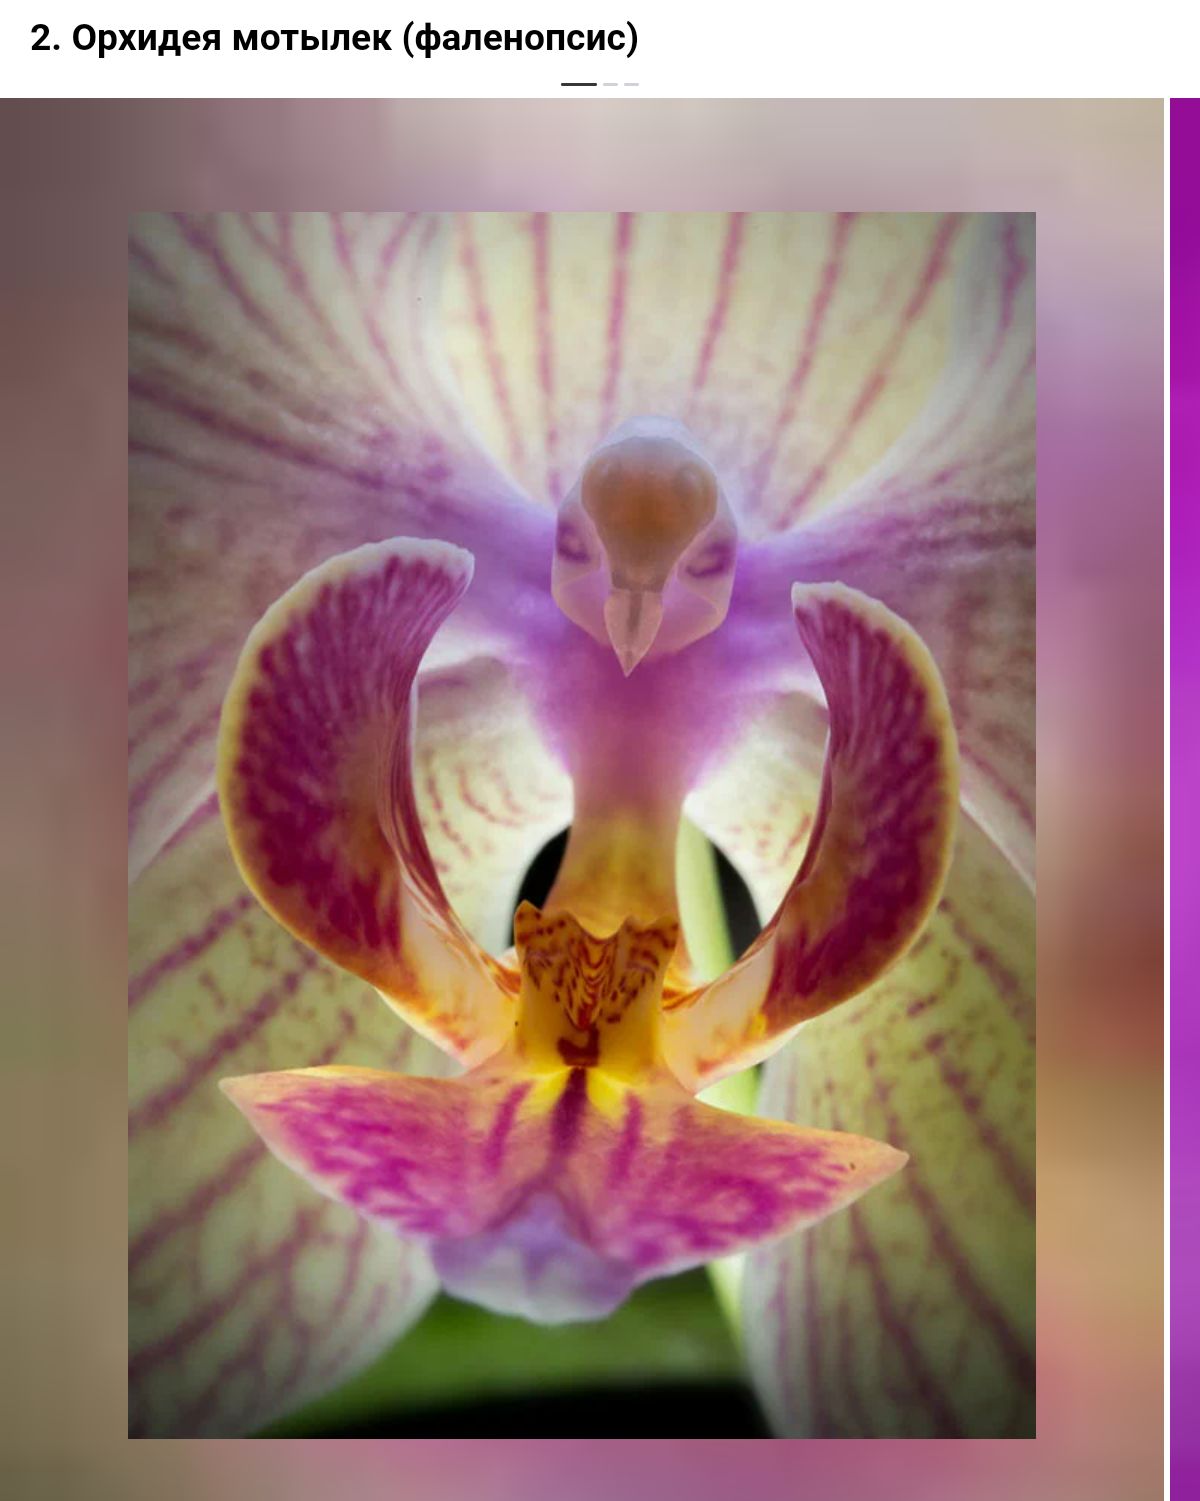 Орхидея ыыпек Фаленопсис